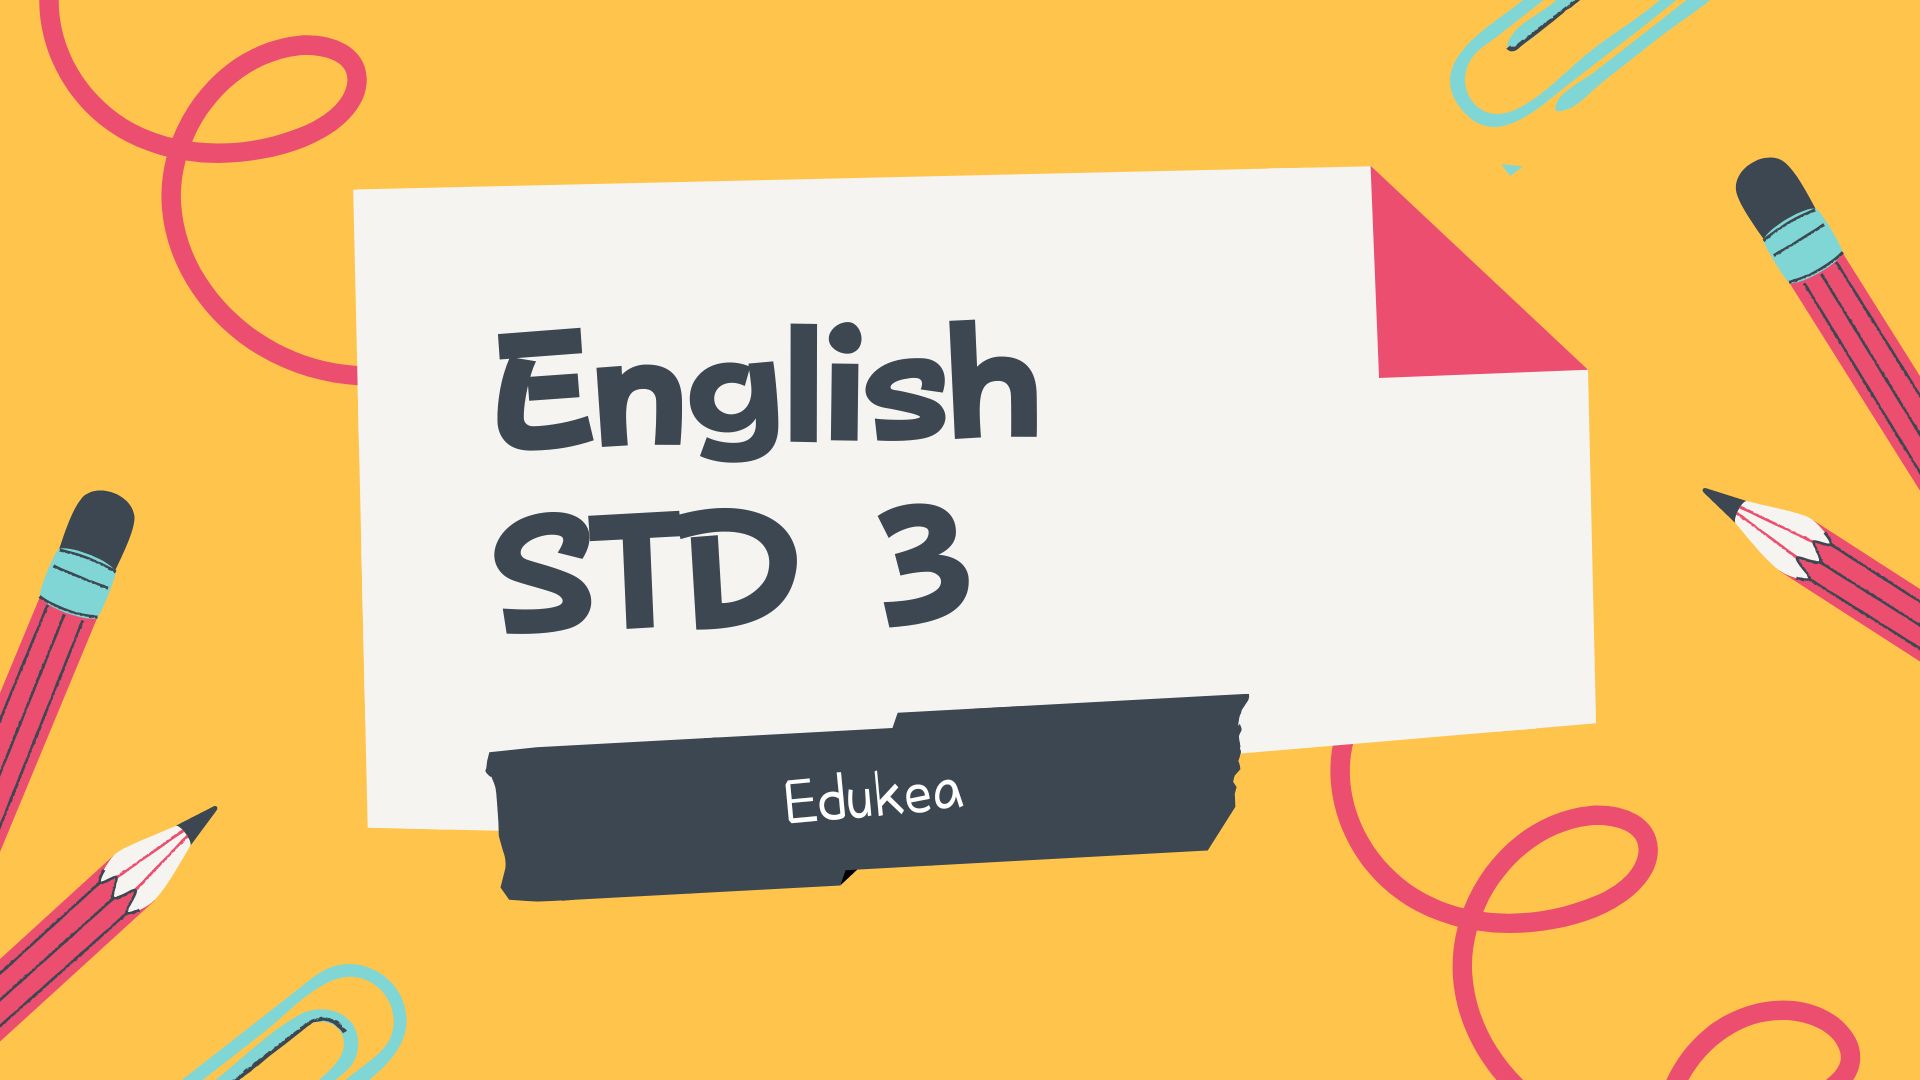 ENGLISH STD 3